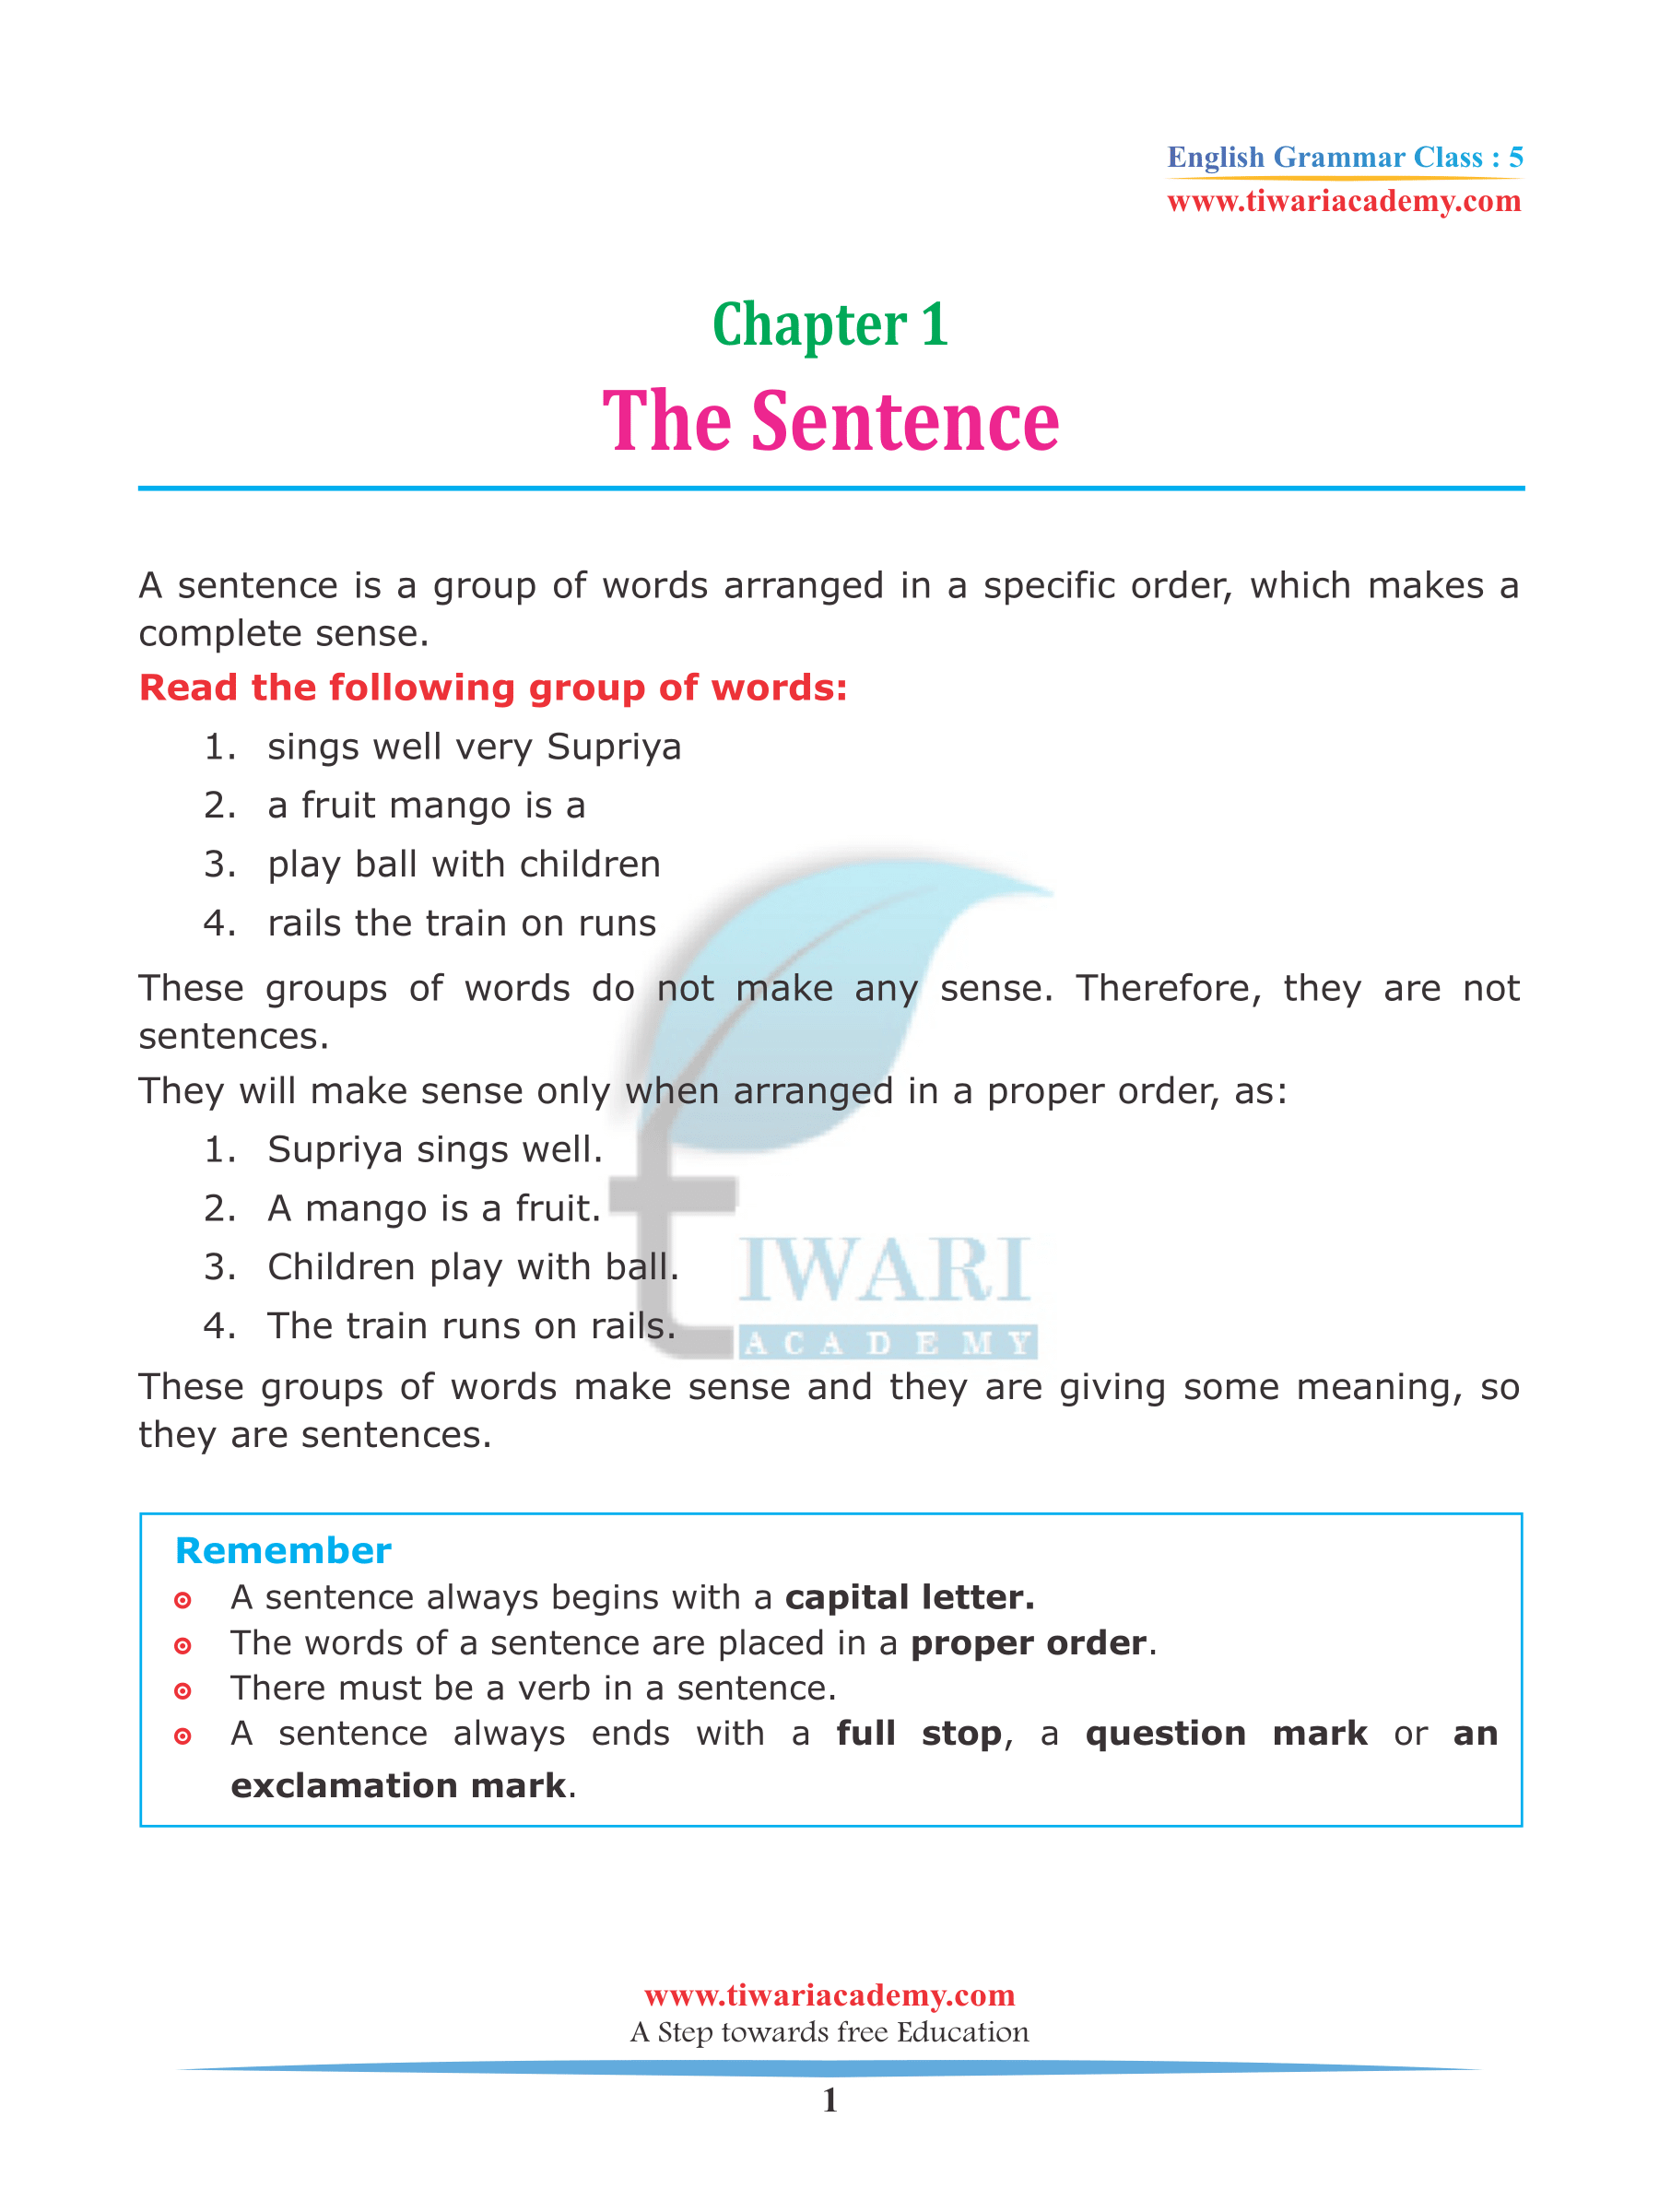 Class 5 English Grammar Chapter 1 The Sentence 2023-2024